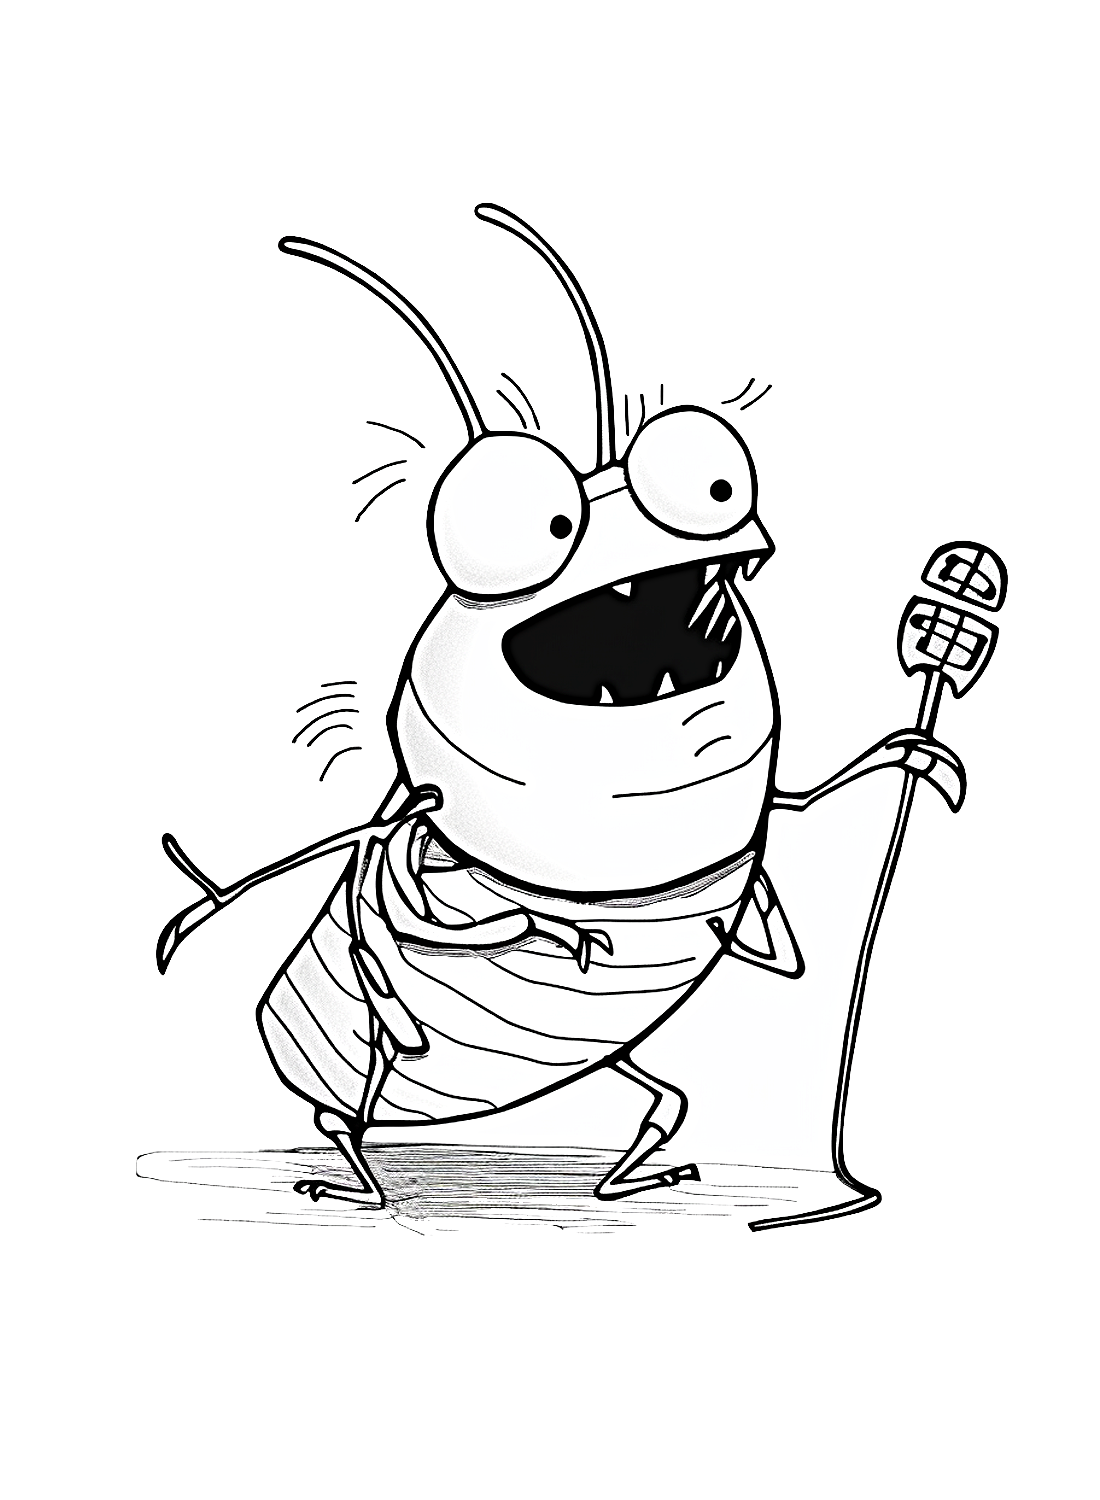 Cucaracha canta desde Cucaracha